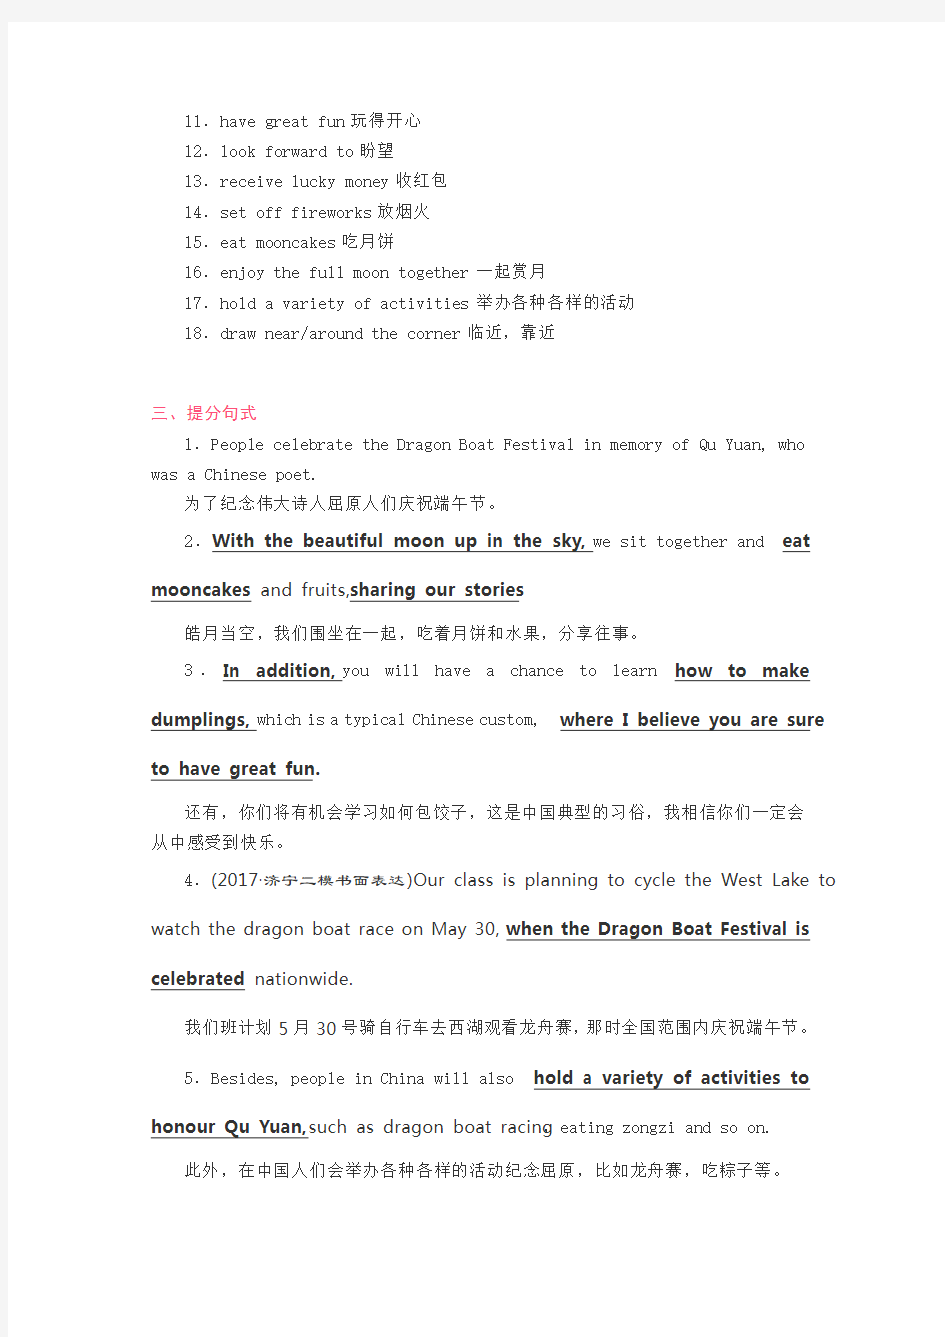 高中英语书面表达话题素材：传统节日及中国传统文化(单词短语+高分句+范文)